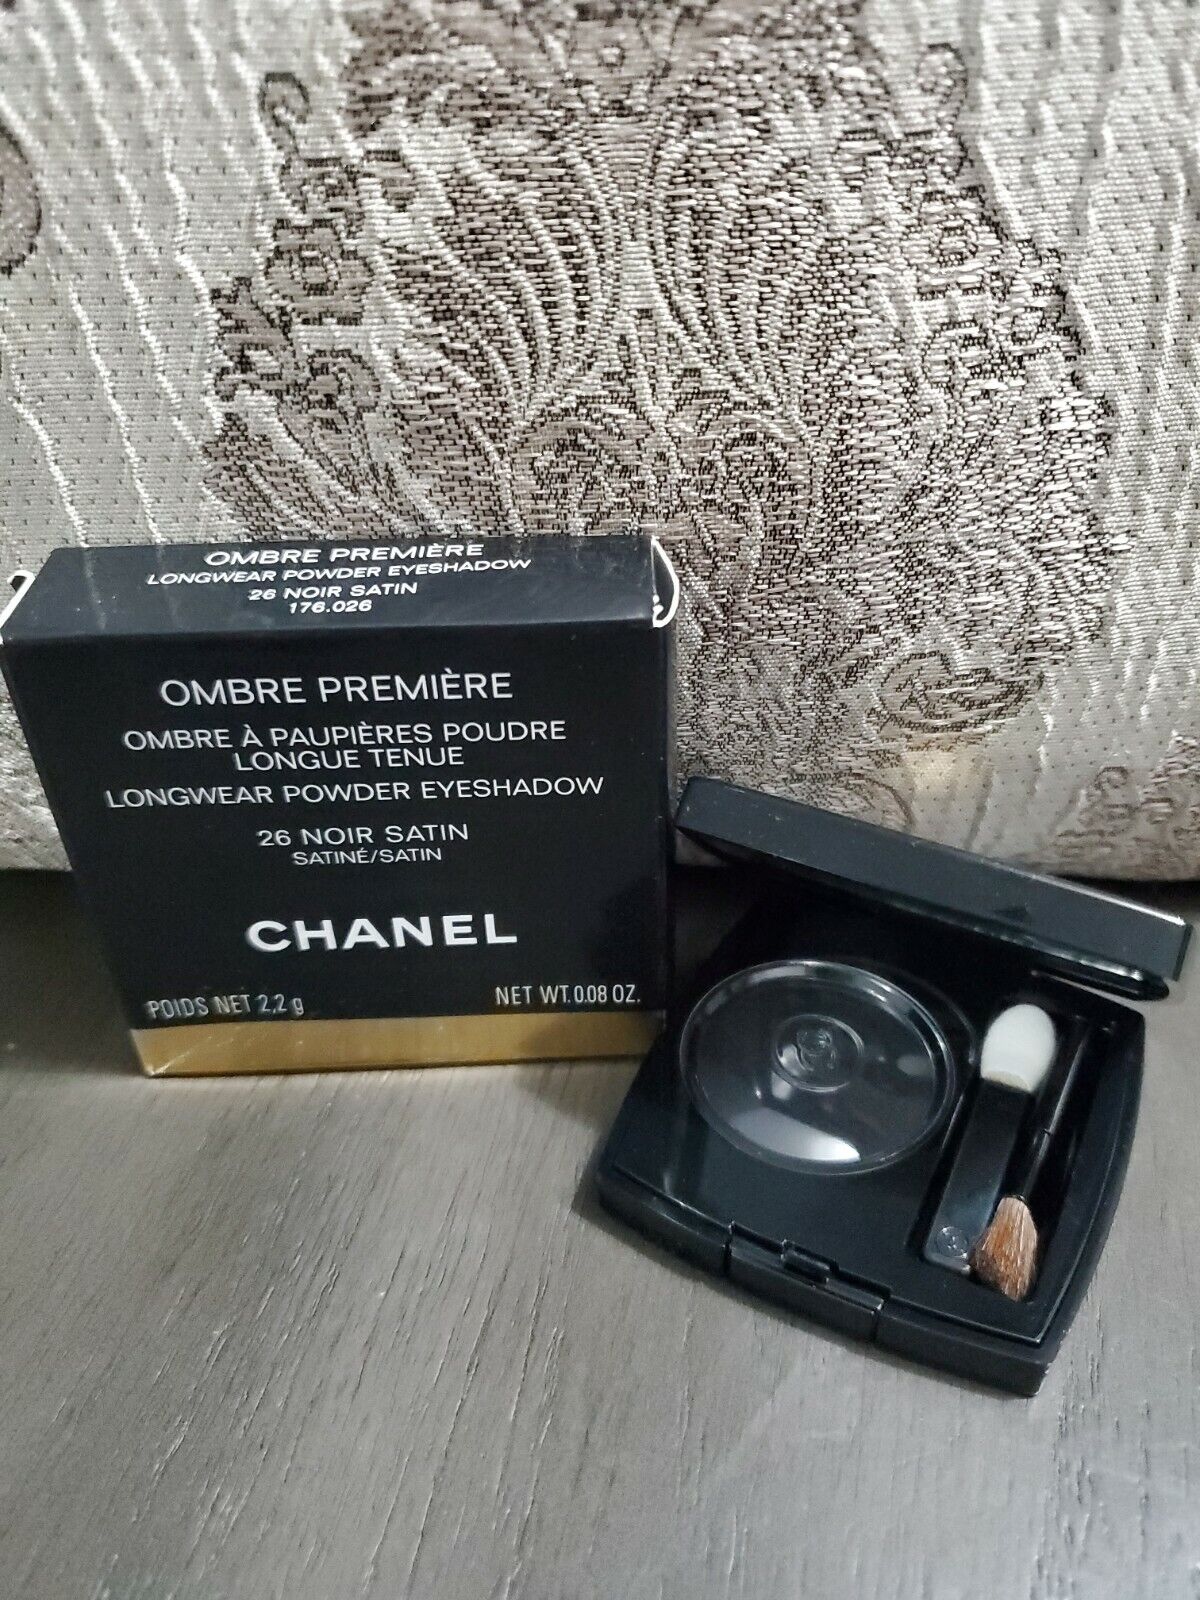 Chanel Ombre Premiere Longwear Powder Eyeshadow 26 NOIR SATIN